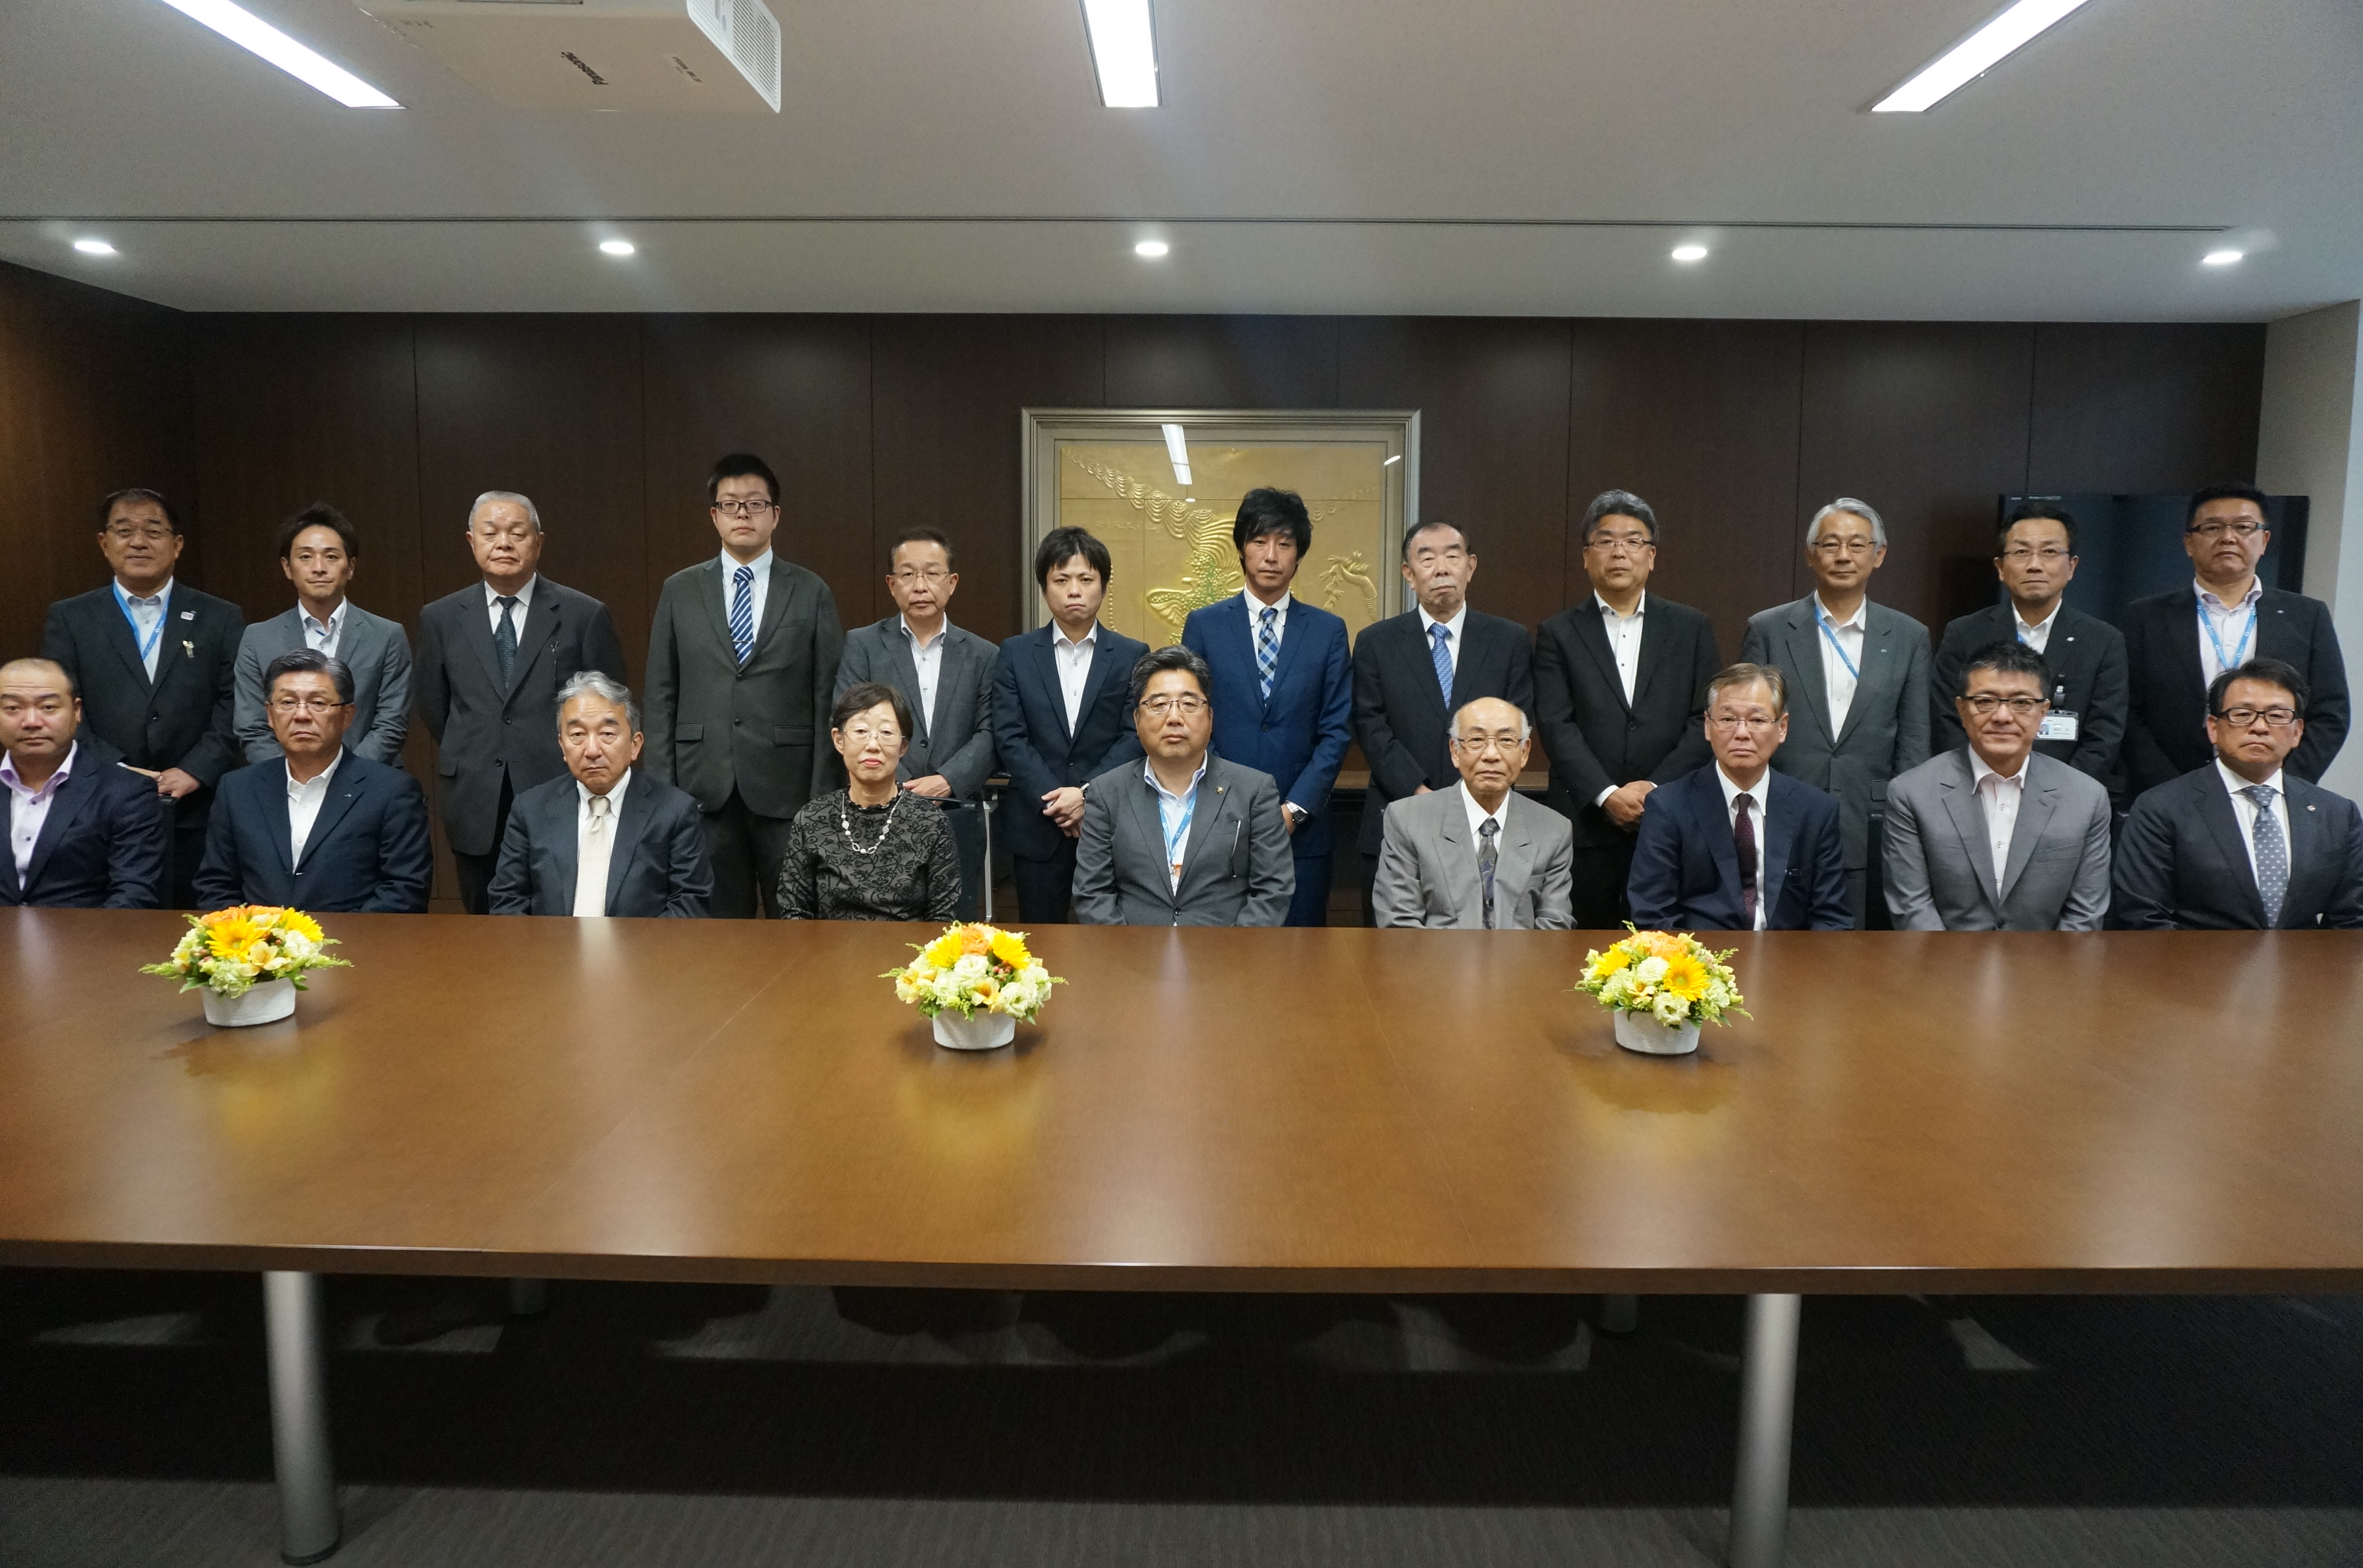 前列左から5番目、内田悦嗣 浦安市長　後列右から4番目、水口和典センター長